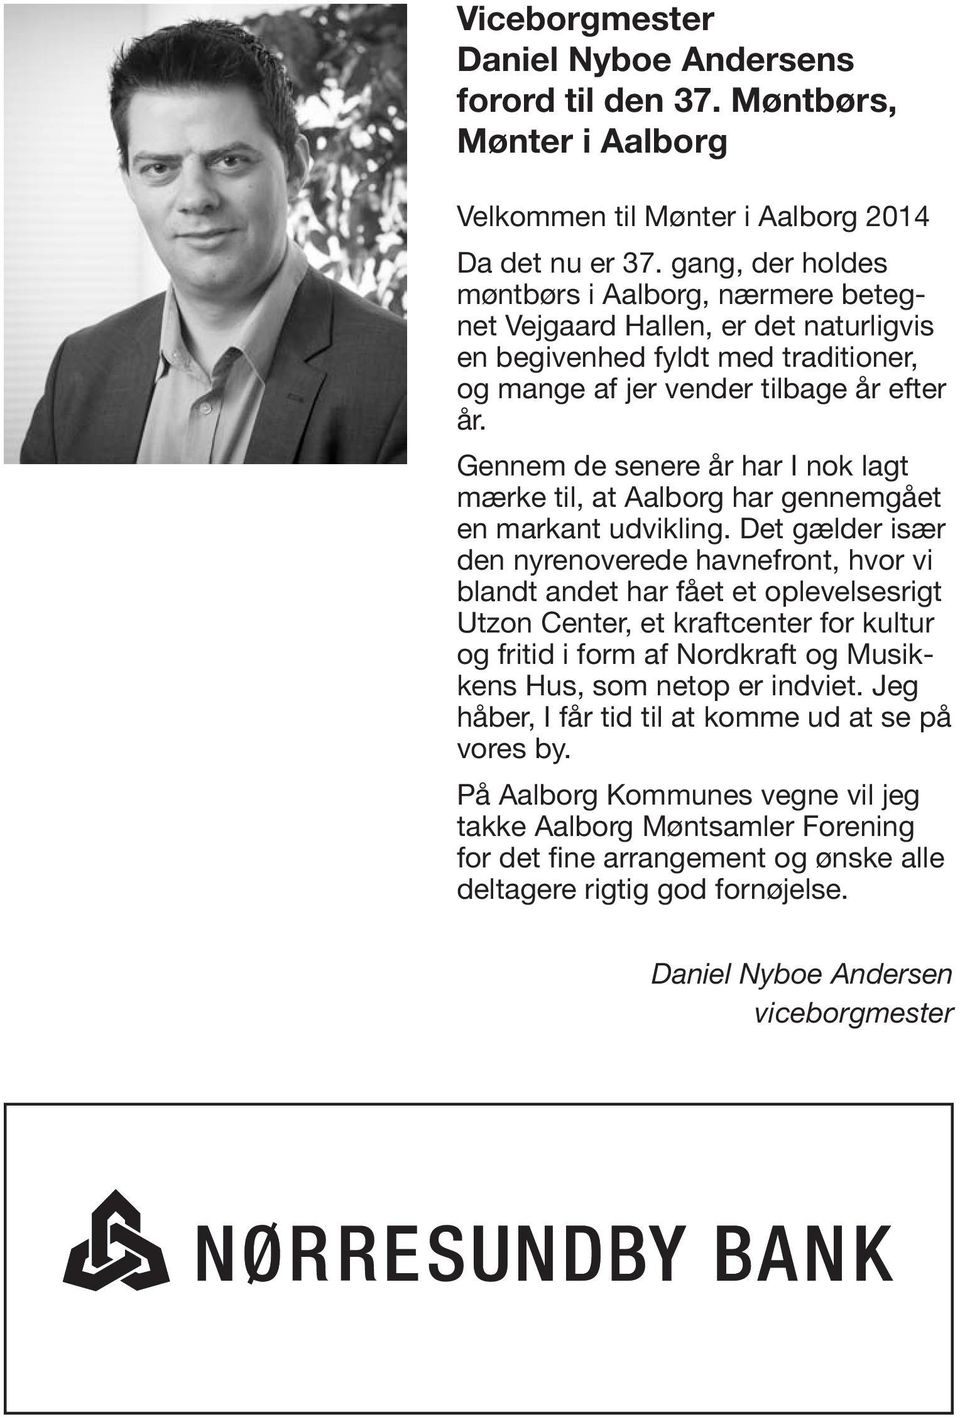 Men den skyldes Velkommen i høj grad glæden til Mønter ved i Aalborg at være 2014 sammen med andre Da samlere. det nu er Ildsjæle 37.